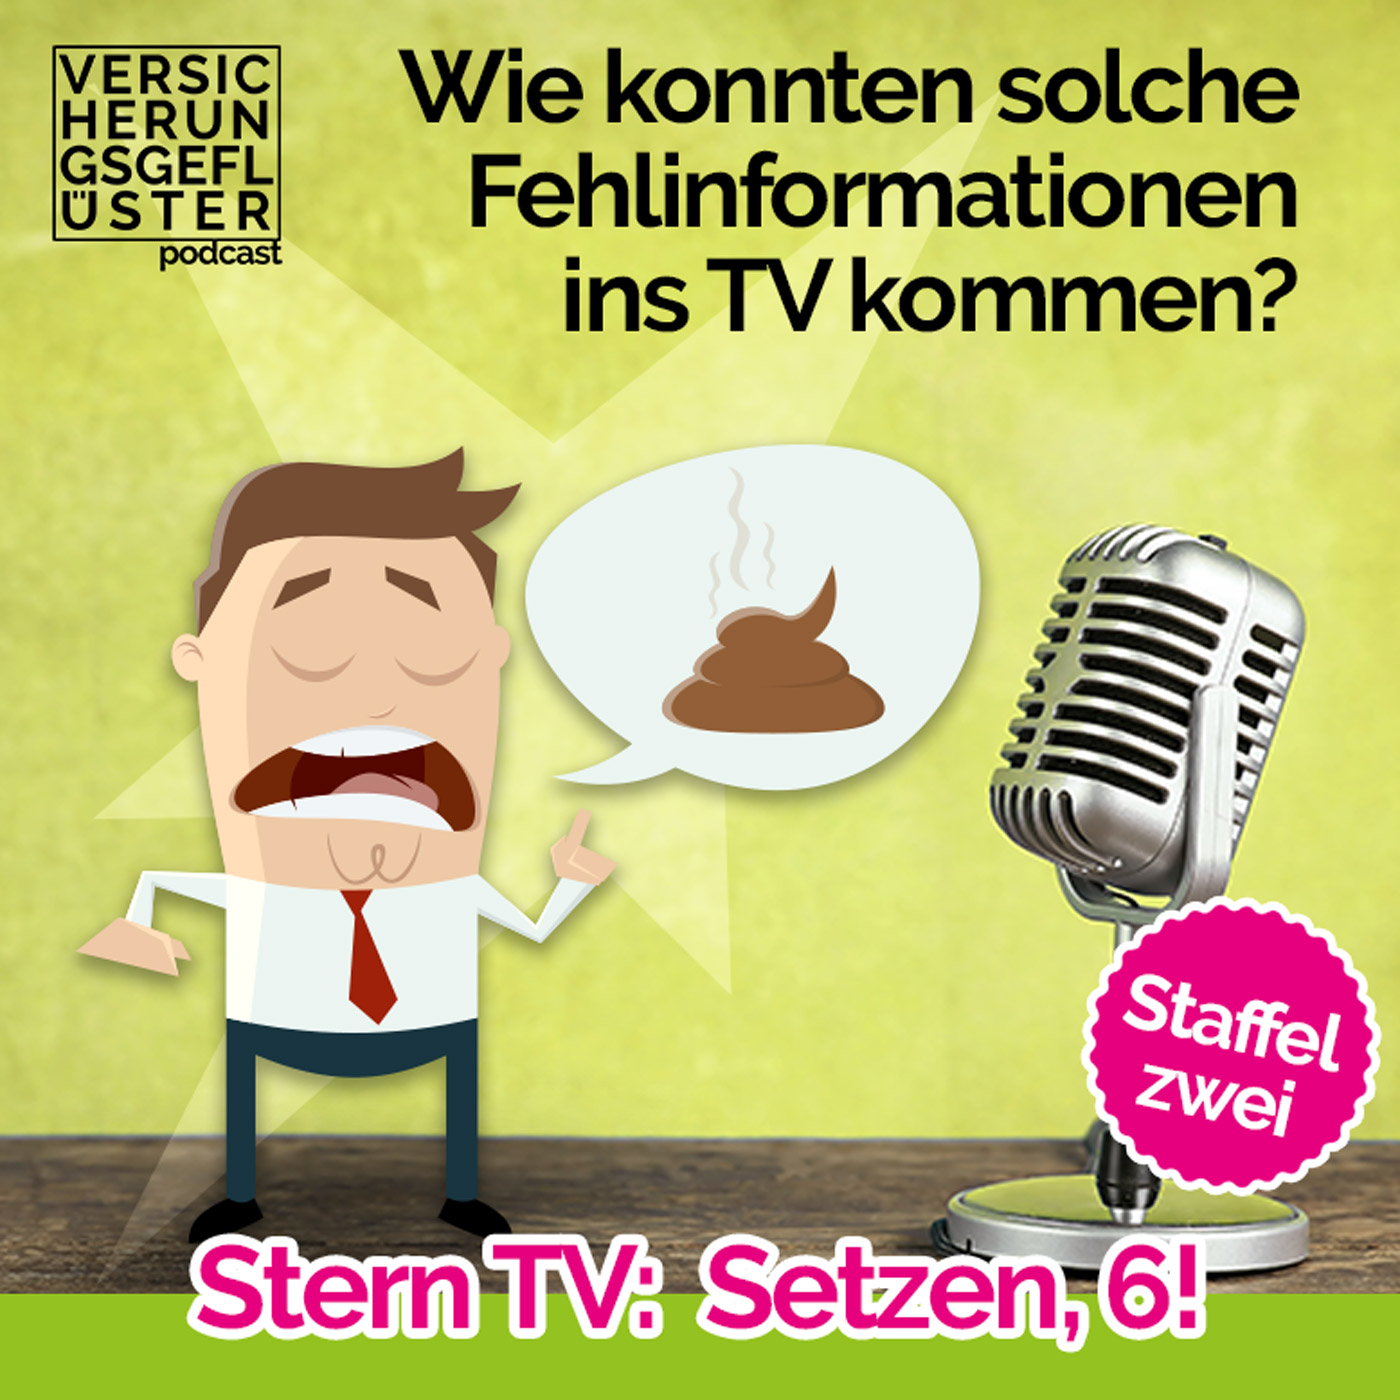 Stern TV: Setzen, 6!